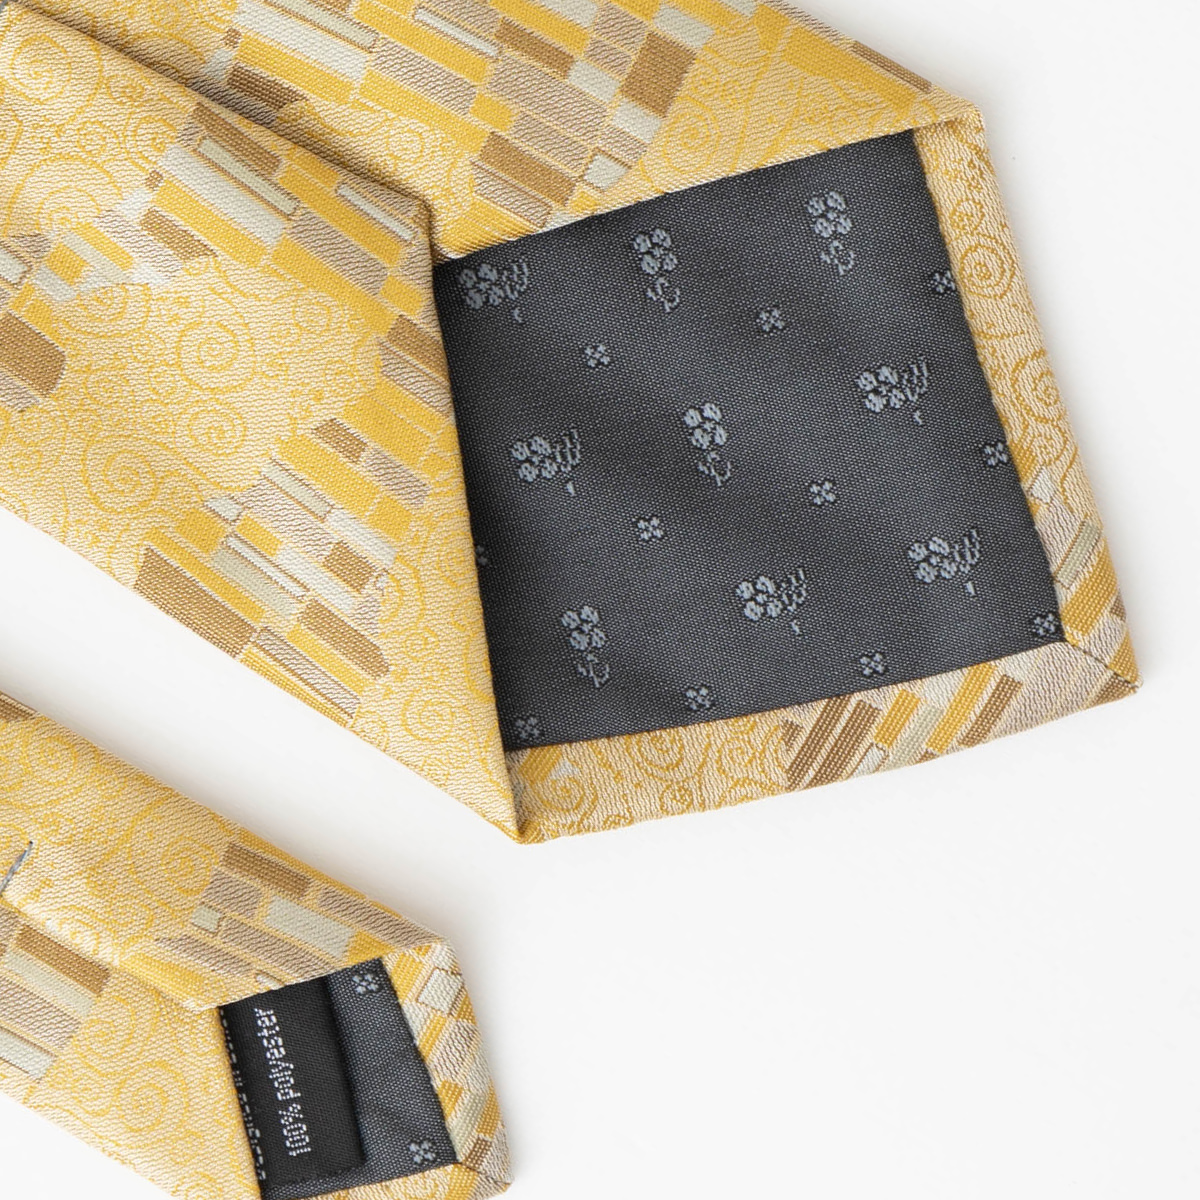 クリムト独特の幾何学模様のCHILLWORK製ネクタイ